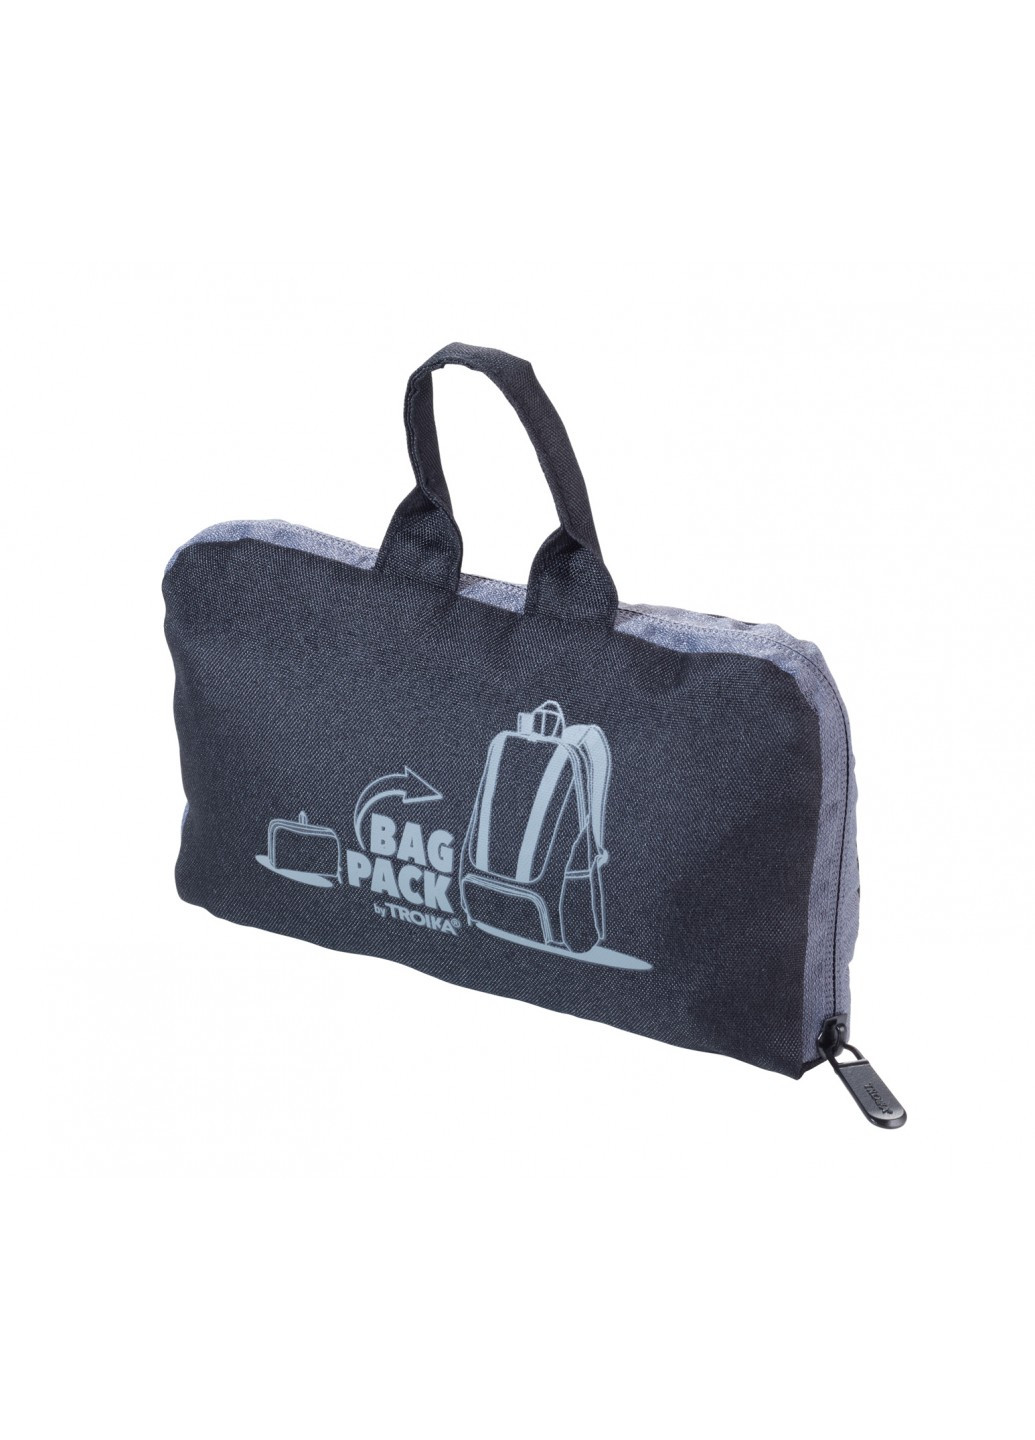 Рюкзак складной ""; чёрный Troika bagpack (225016456)